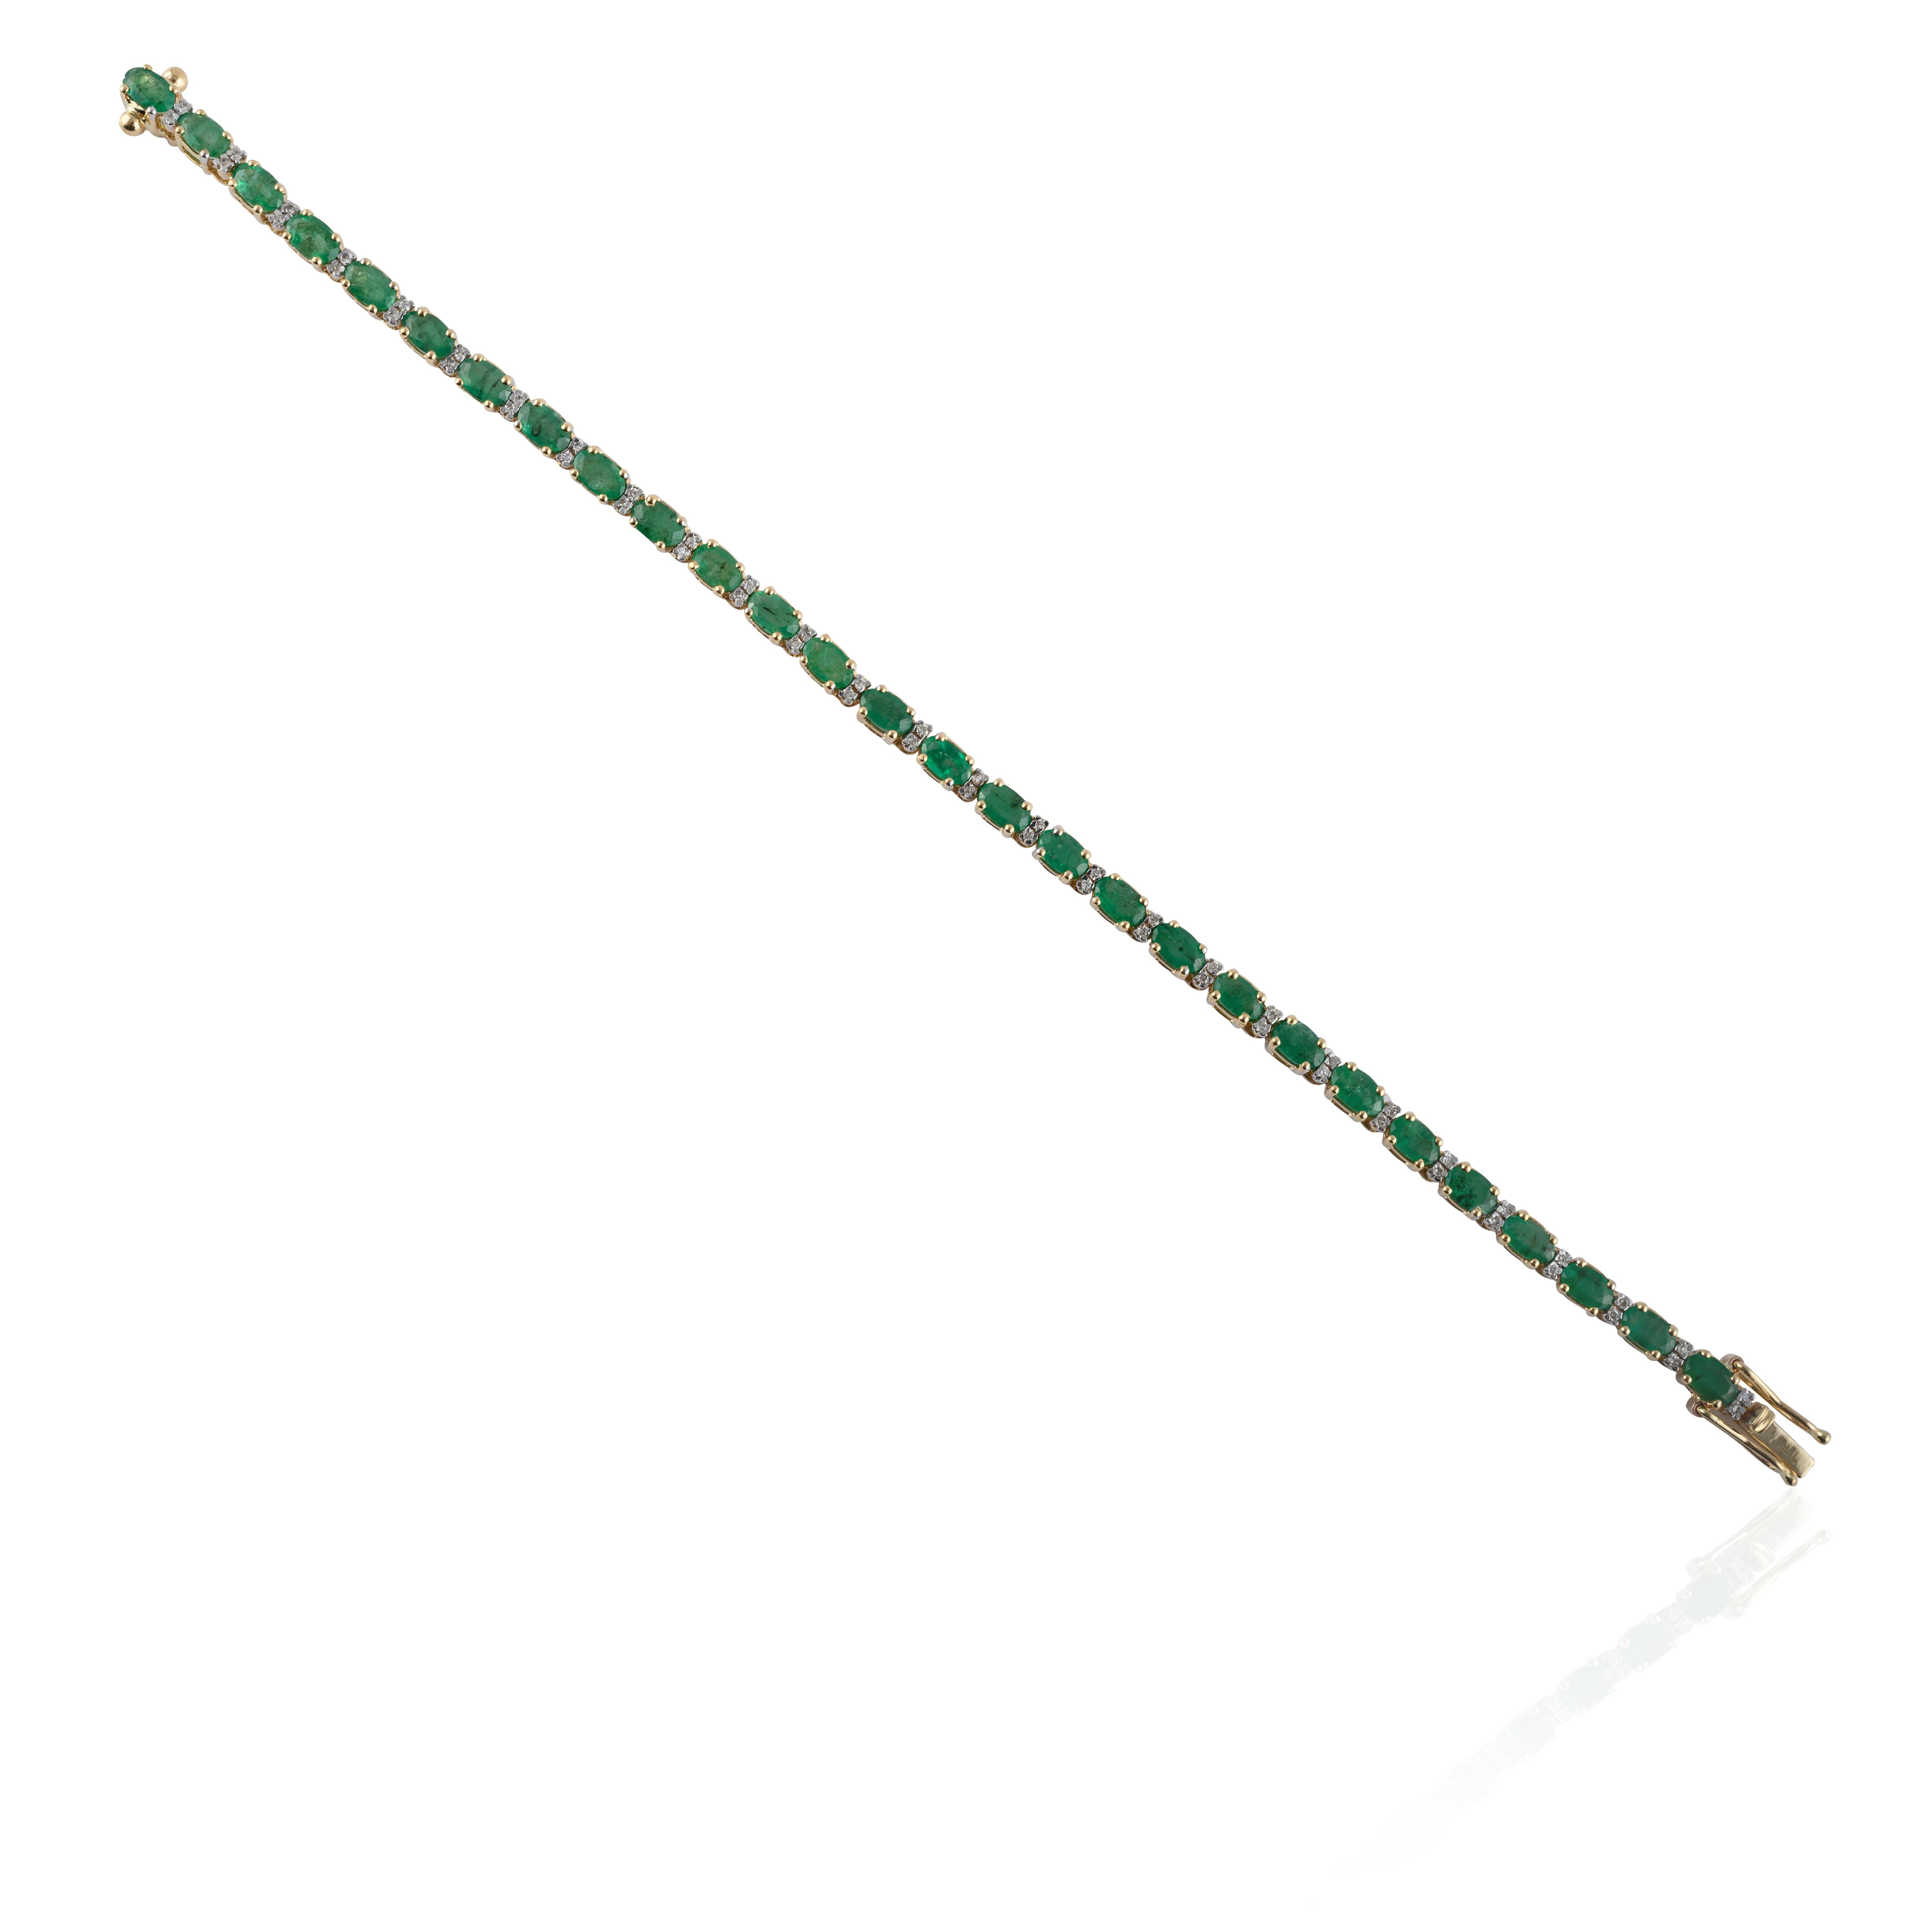 Dieses prächtige Smaragd-Diamant-Tennisarmband aus 14-karätigem Gold präsentiert 28 unendlich funkelnde natürliche Smaragde mit einem Gewicht von 6,01 Karat. Es misst 7 Zoll in der Länge. 
Smaragd steigert die intellektuellen Fähigkeiten des